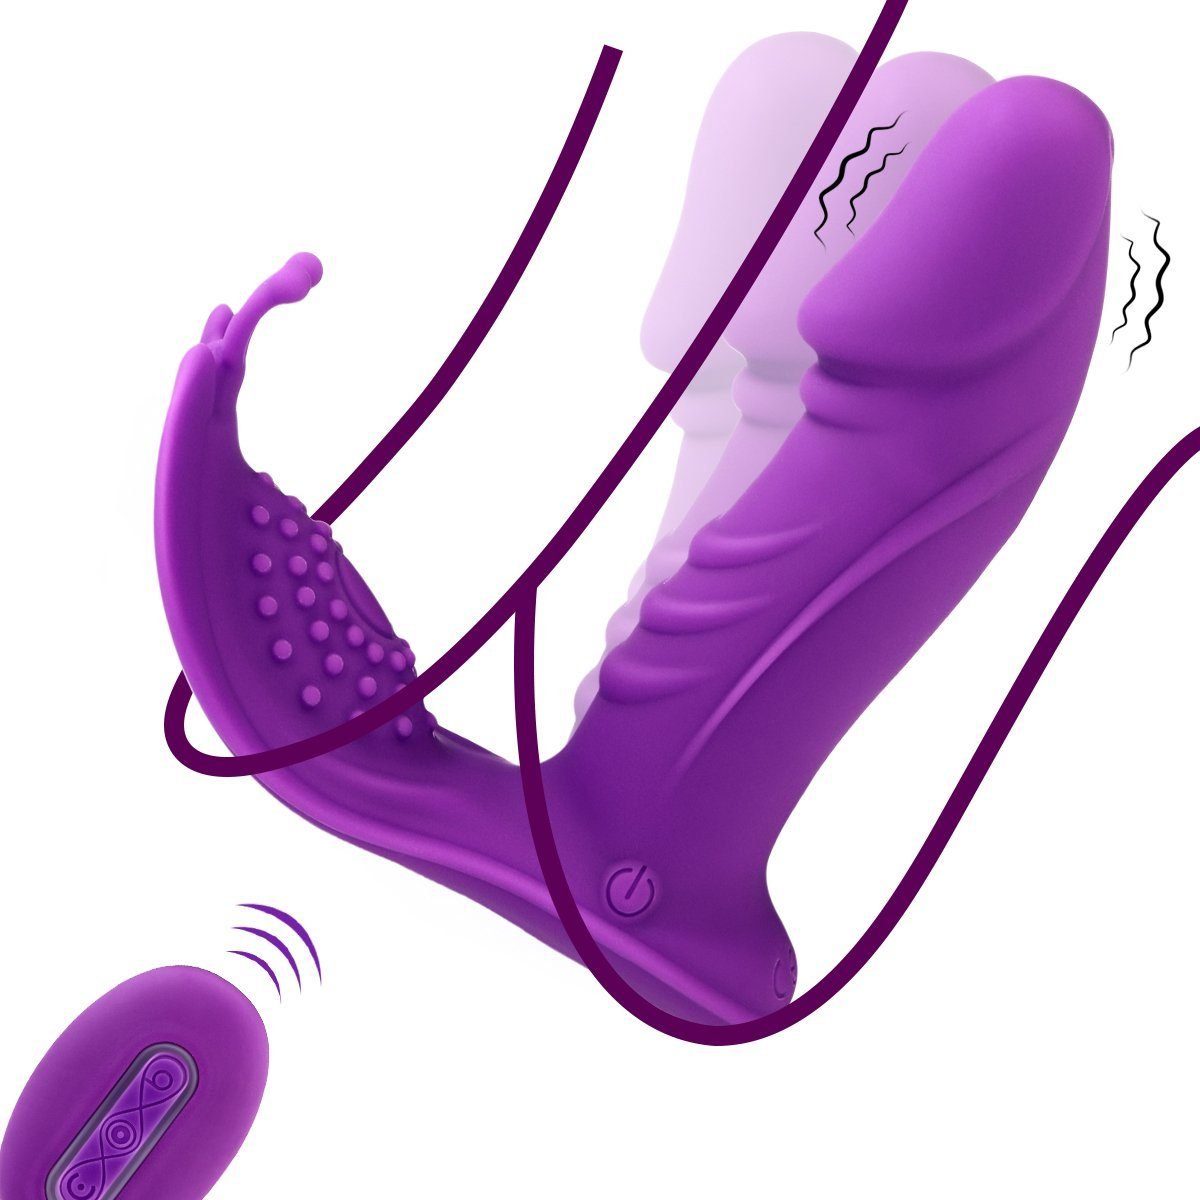 LOVONLIVE Massagegerät Tragbar Butterfly Vibrator für Vagina mit 3x7 Modi Swing-Stoßfunktion, Aufladbarer Dildo Vibrator Erotik Sex Spielzeug für die Frau Paare Bild Bild